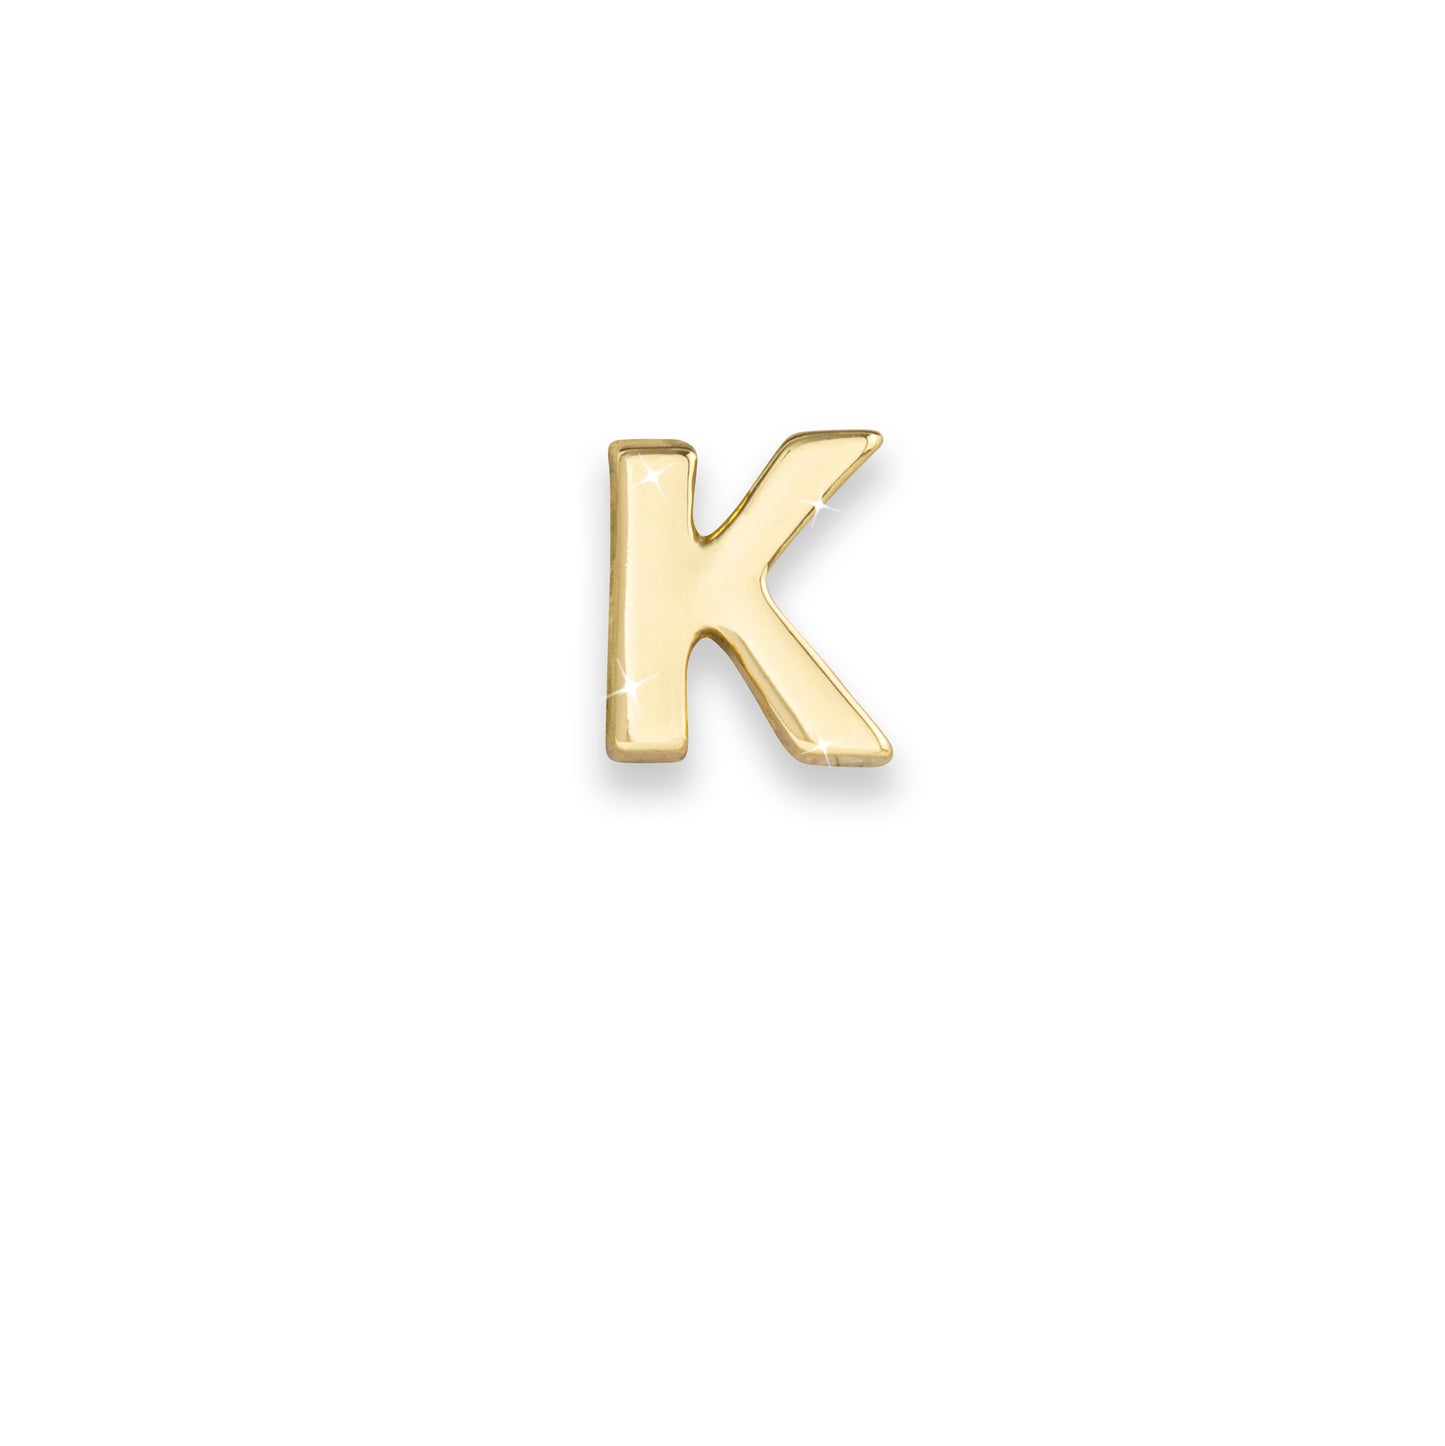 Gold letter K monogram charm for necklaces & bracelets